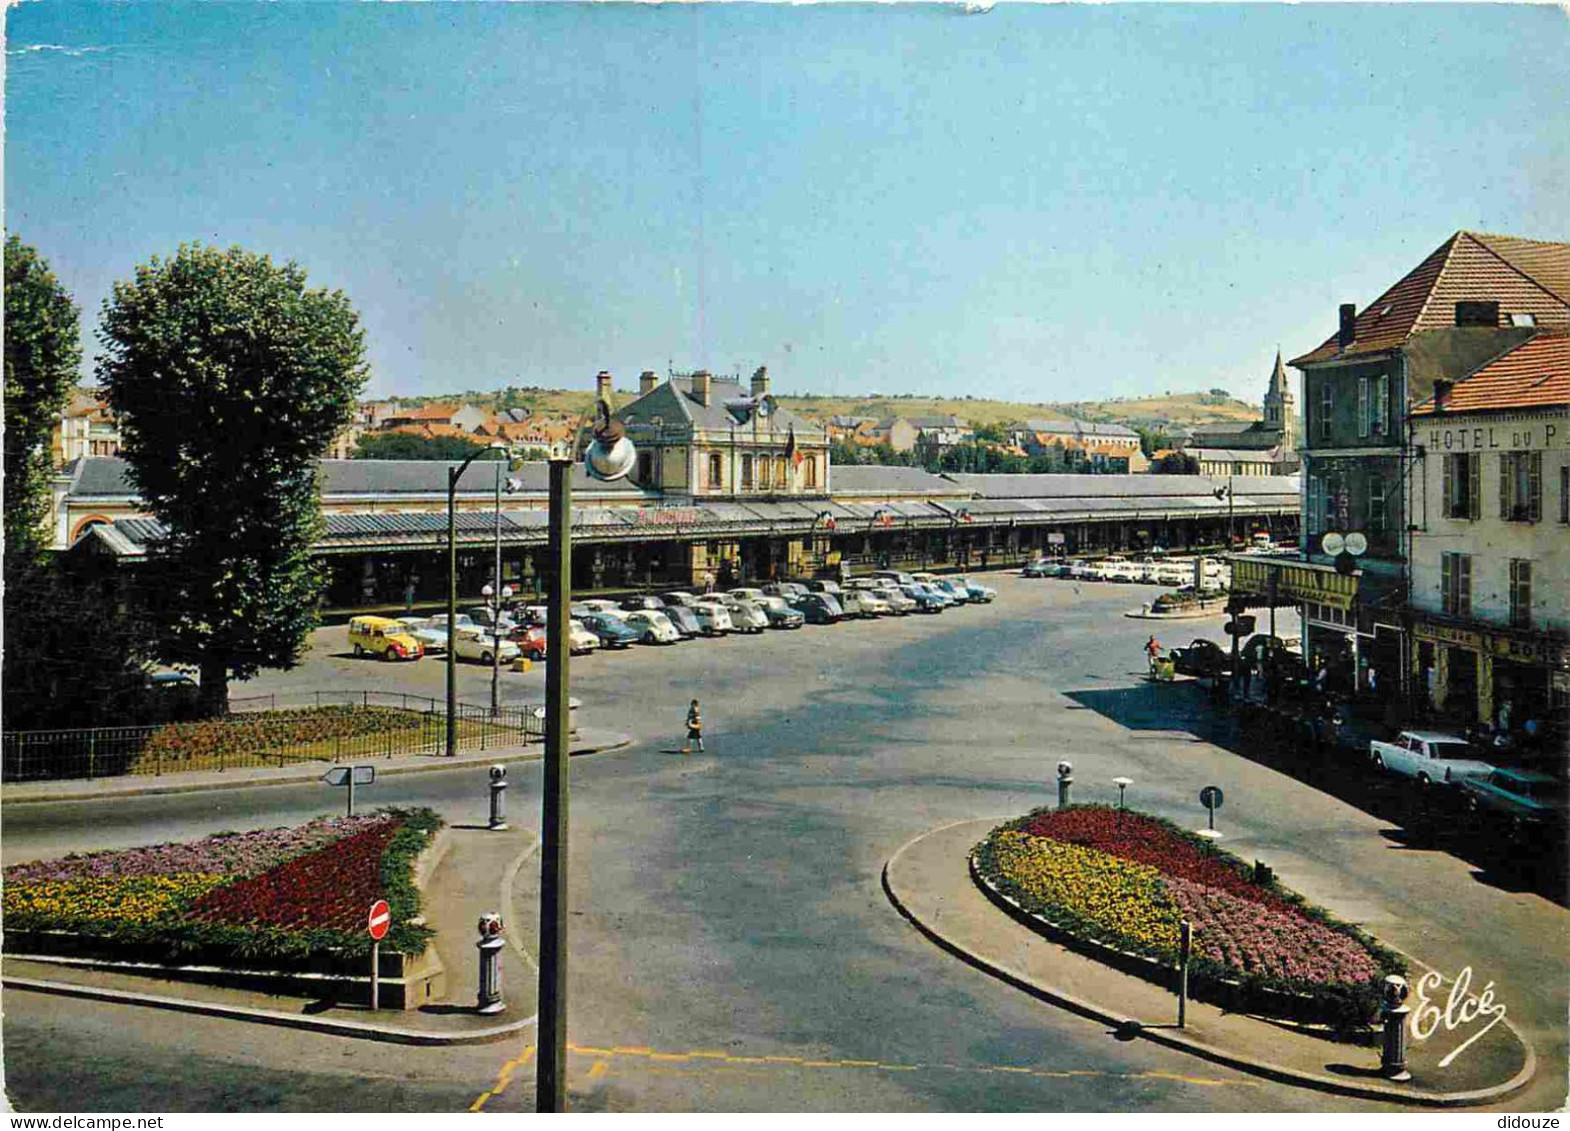 Trains - Gares Sans Trains - Vichy - La Gare - Automobiles - CPM - Voir Scans Recto-Verso - Stations Without Trains